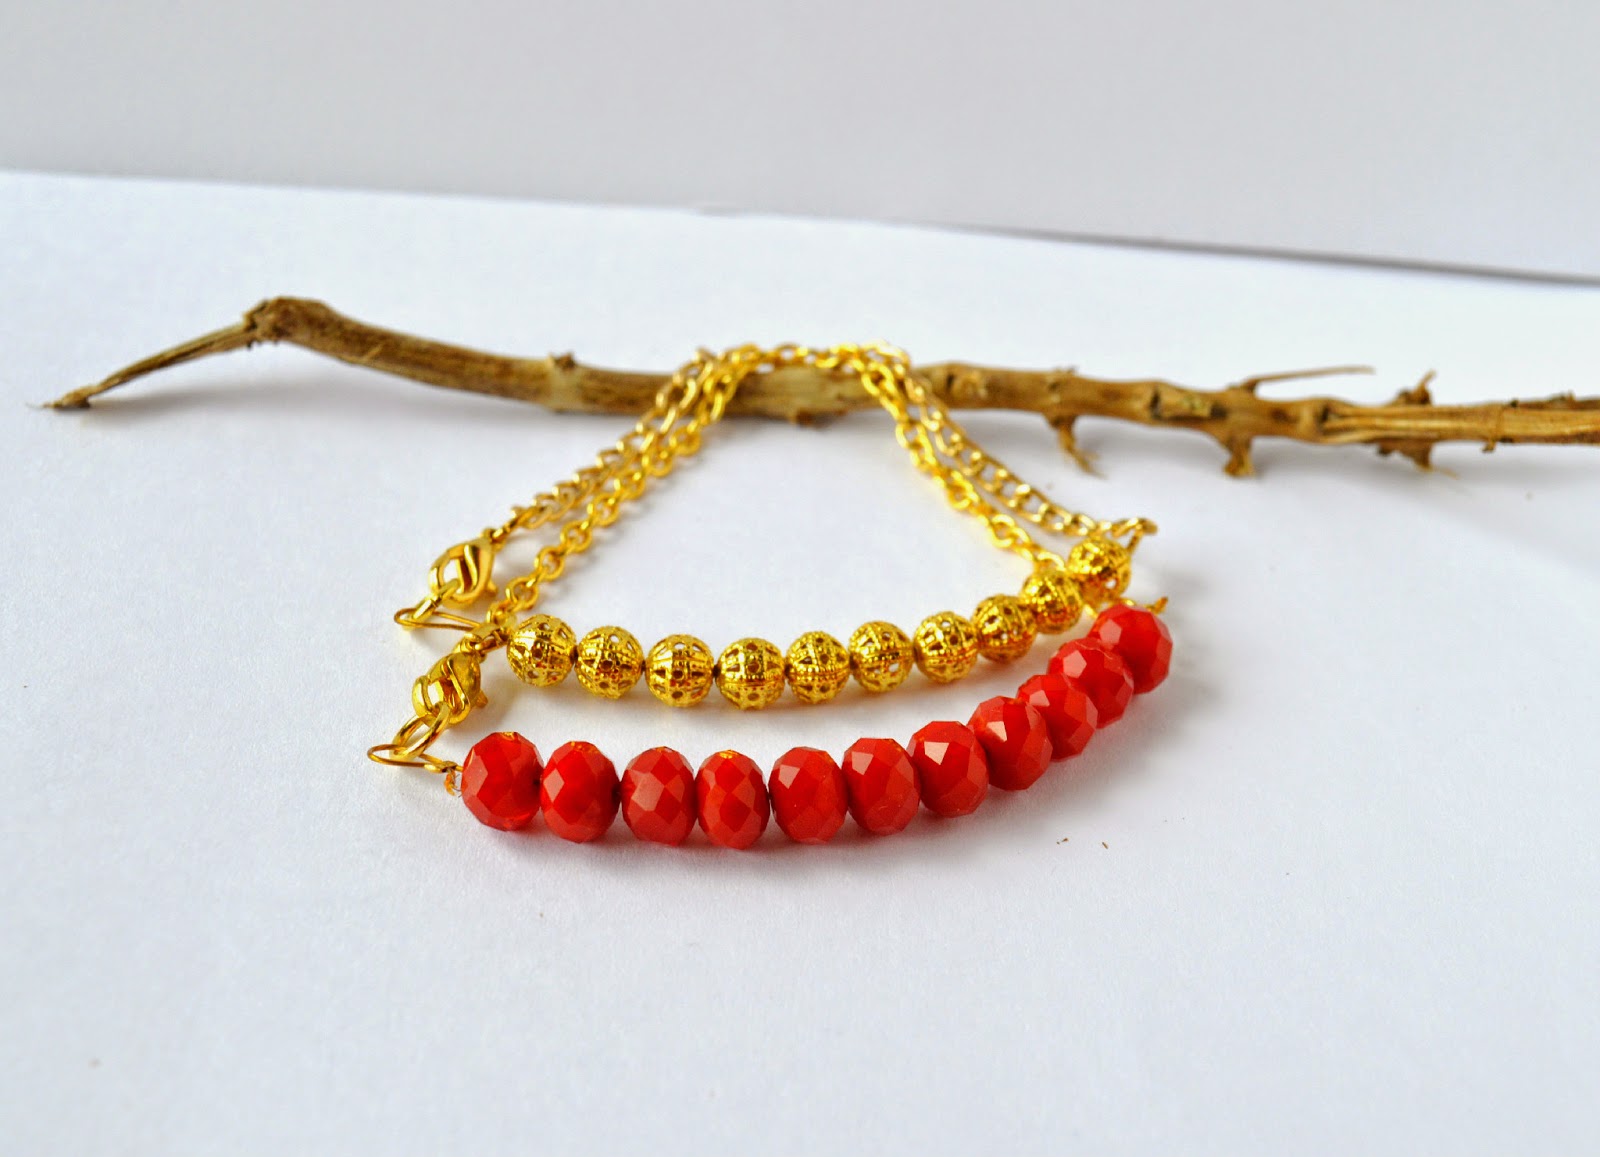 http://happygirlycrafty.blogspot.gr/2015/02/dainty-beads-and-chain-bracelets-diy.html